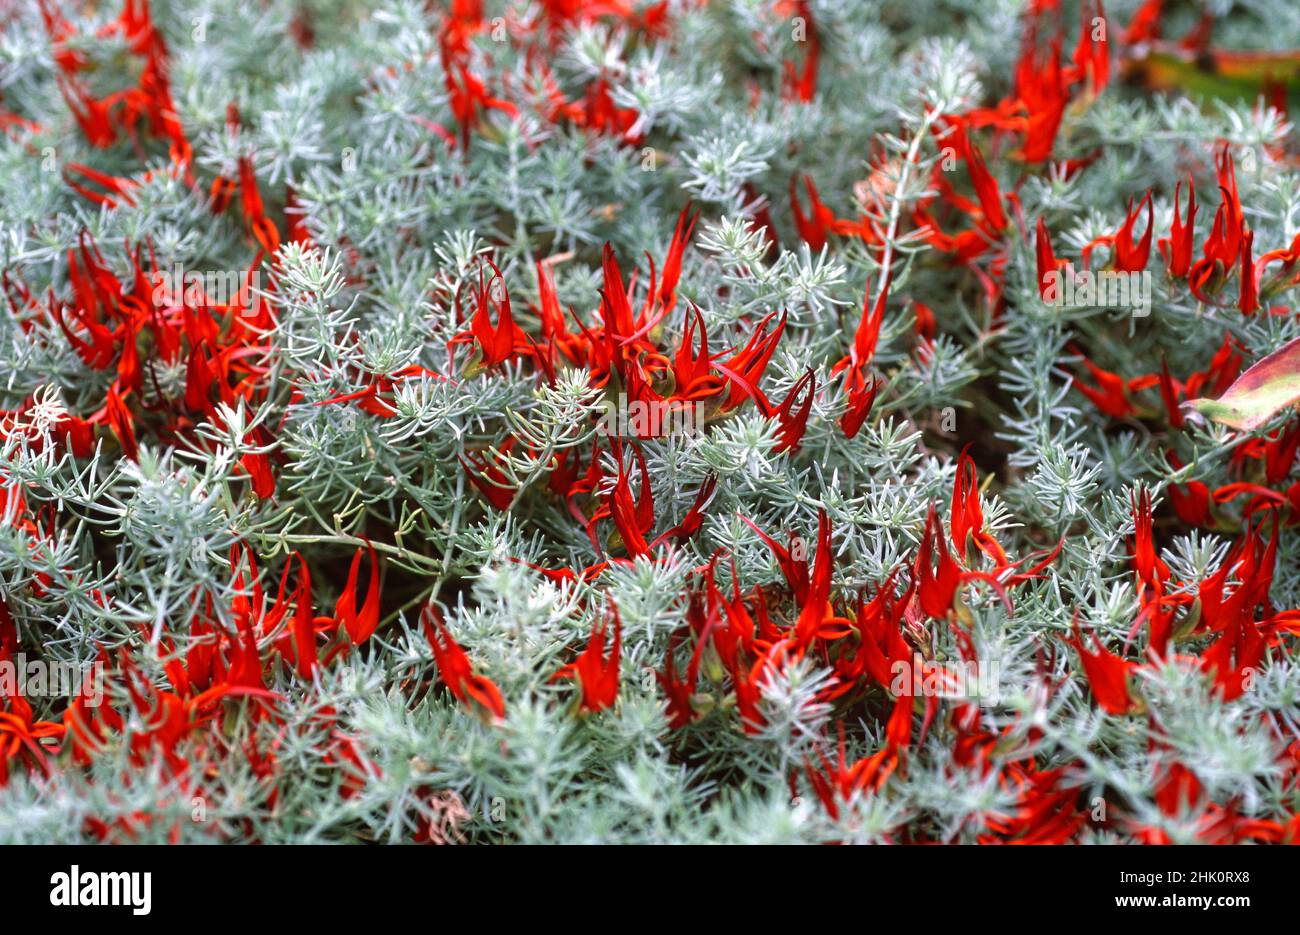 Picopaloma, pico de loro o gema de coral (Lotus berthelotii) es una hierba perenne postrada endémica de Tenerife, Islas Canarias, España. Flores rojas Foto de stock